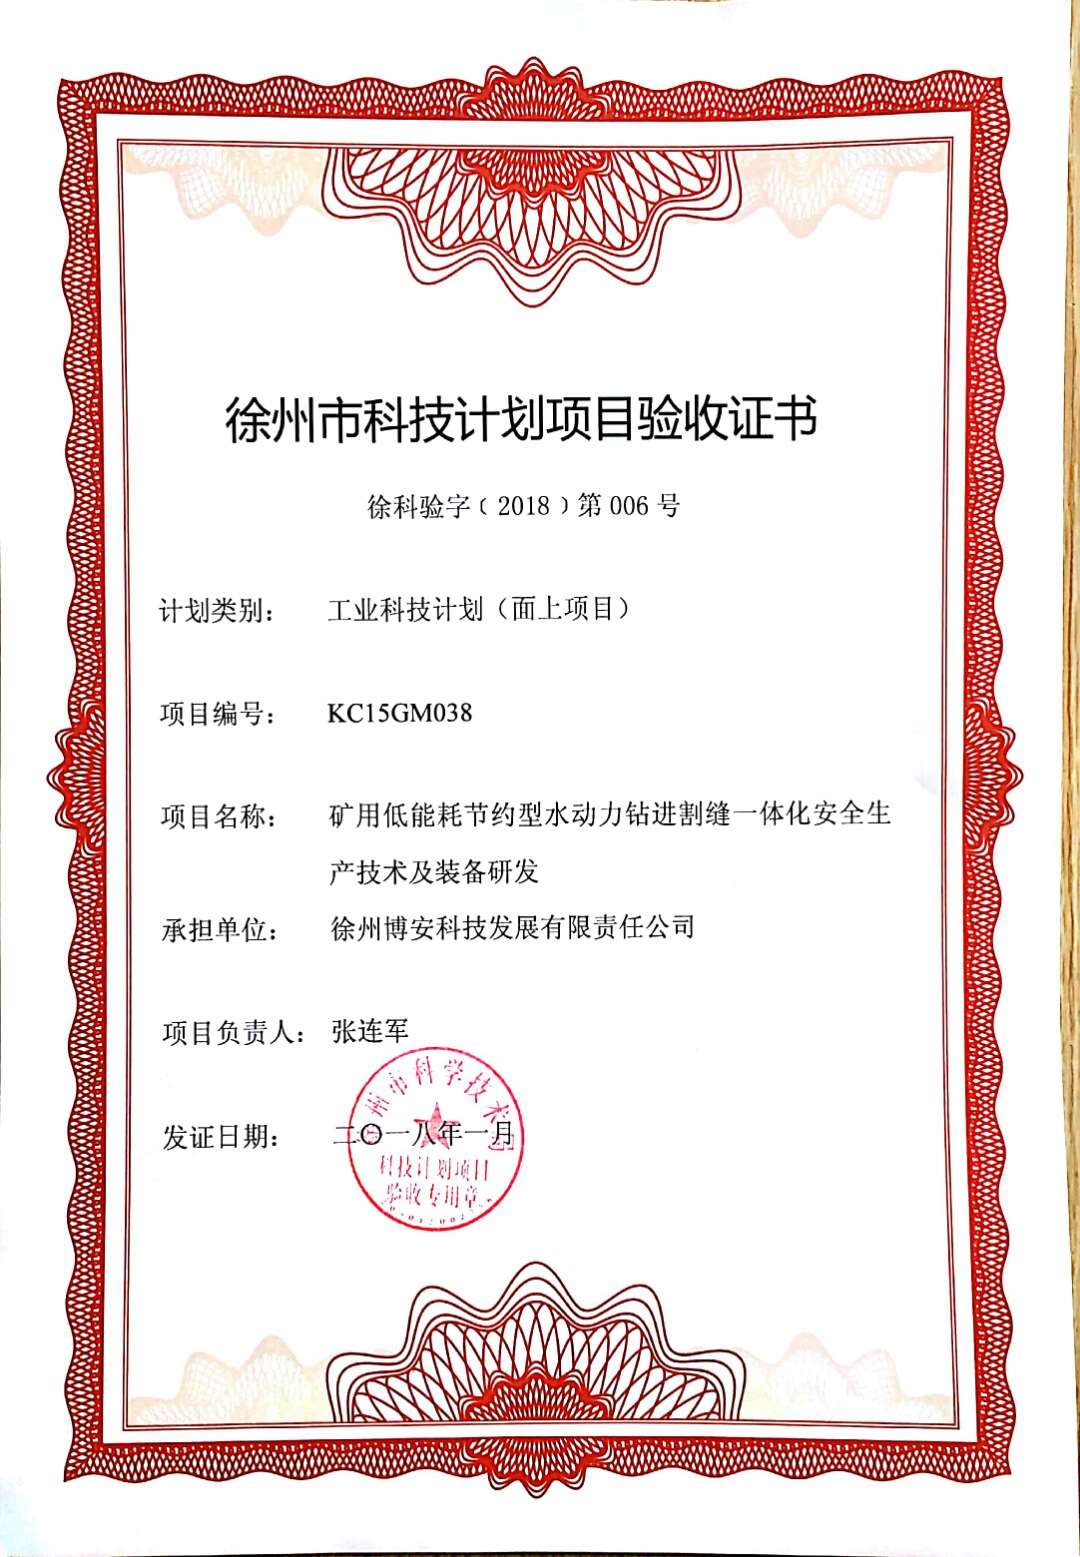 博安科技获徐州市科技计划项目验收证书